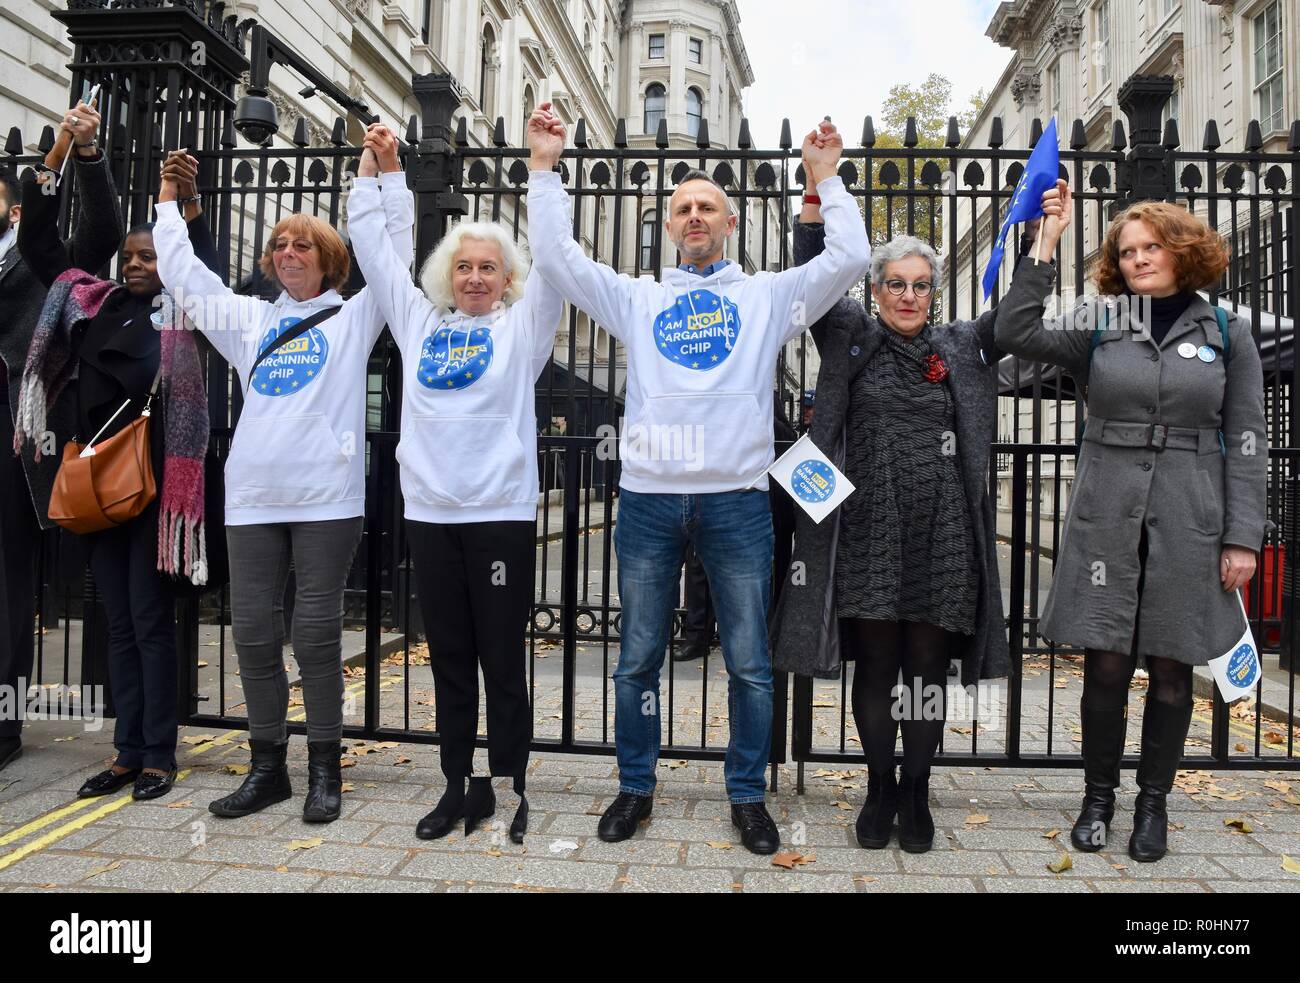 Londra, Regno Unito. 5 novembre 2018. L'ultimo miglio,manifestanti formano una catena umana dalla piazza del Parlamento al 10 di Downing Street per la campagna per il diritto di soggiorno nel Regno Unito dopo Brexit,London.UK Credit: Michael melia/Alamy Live News Foto Stock